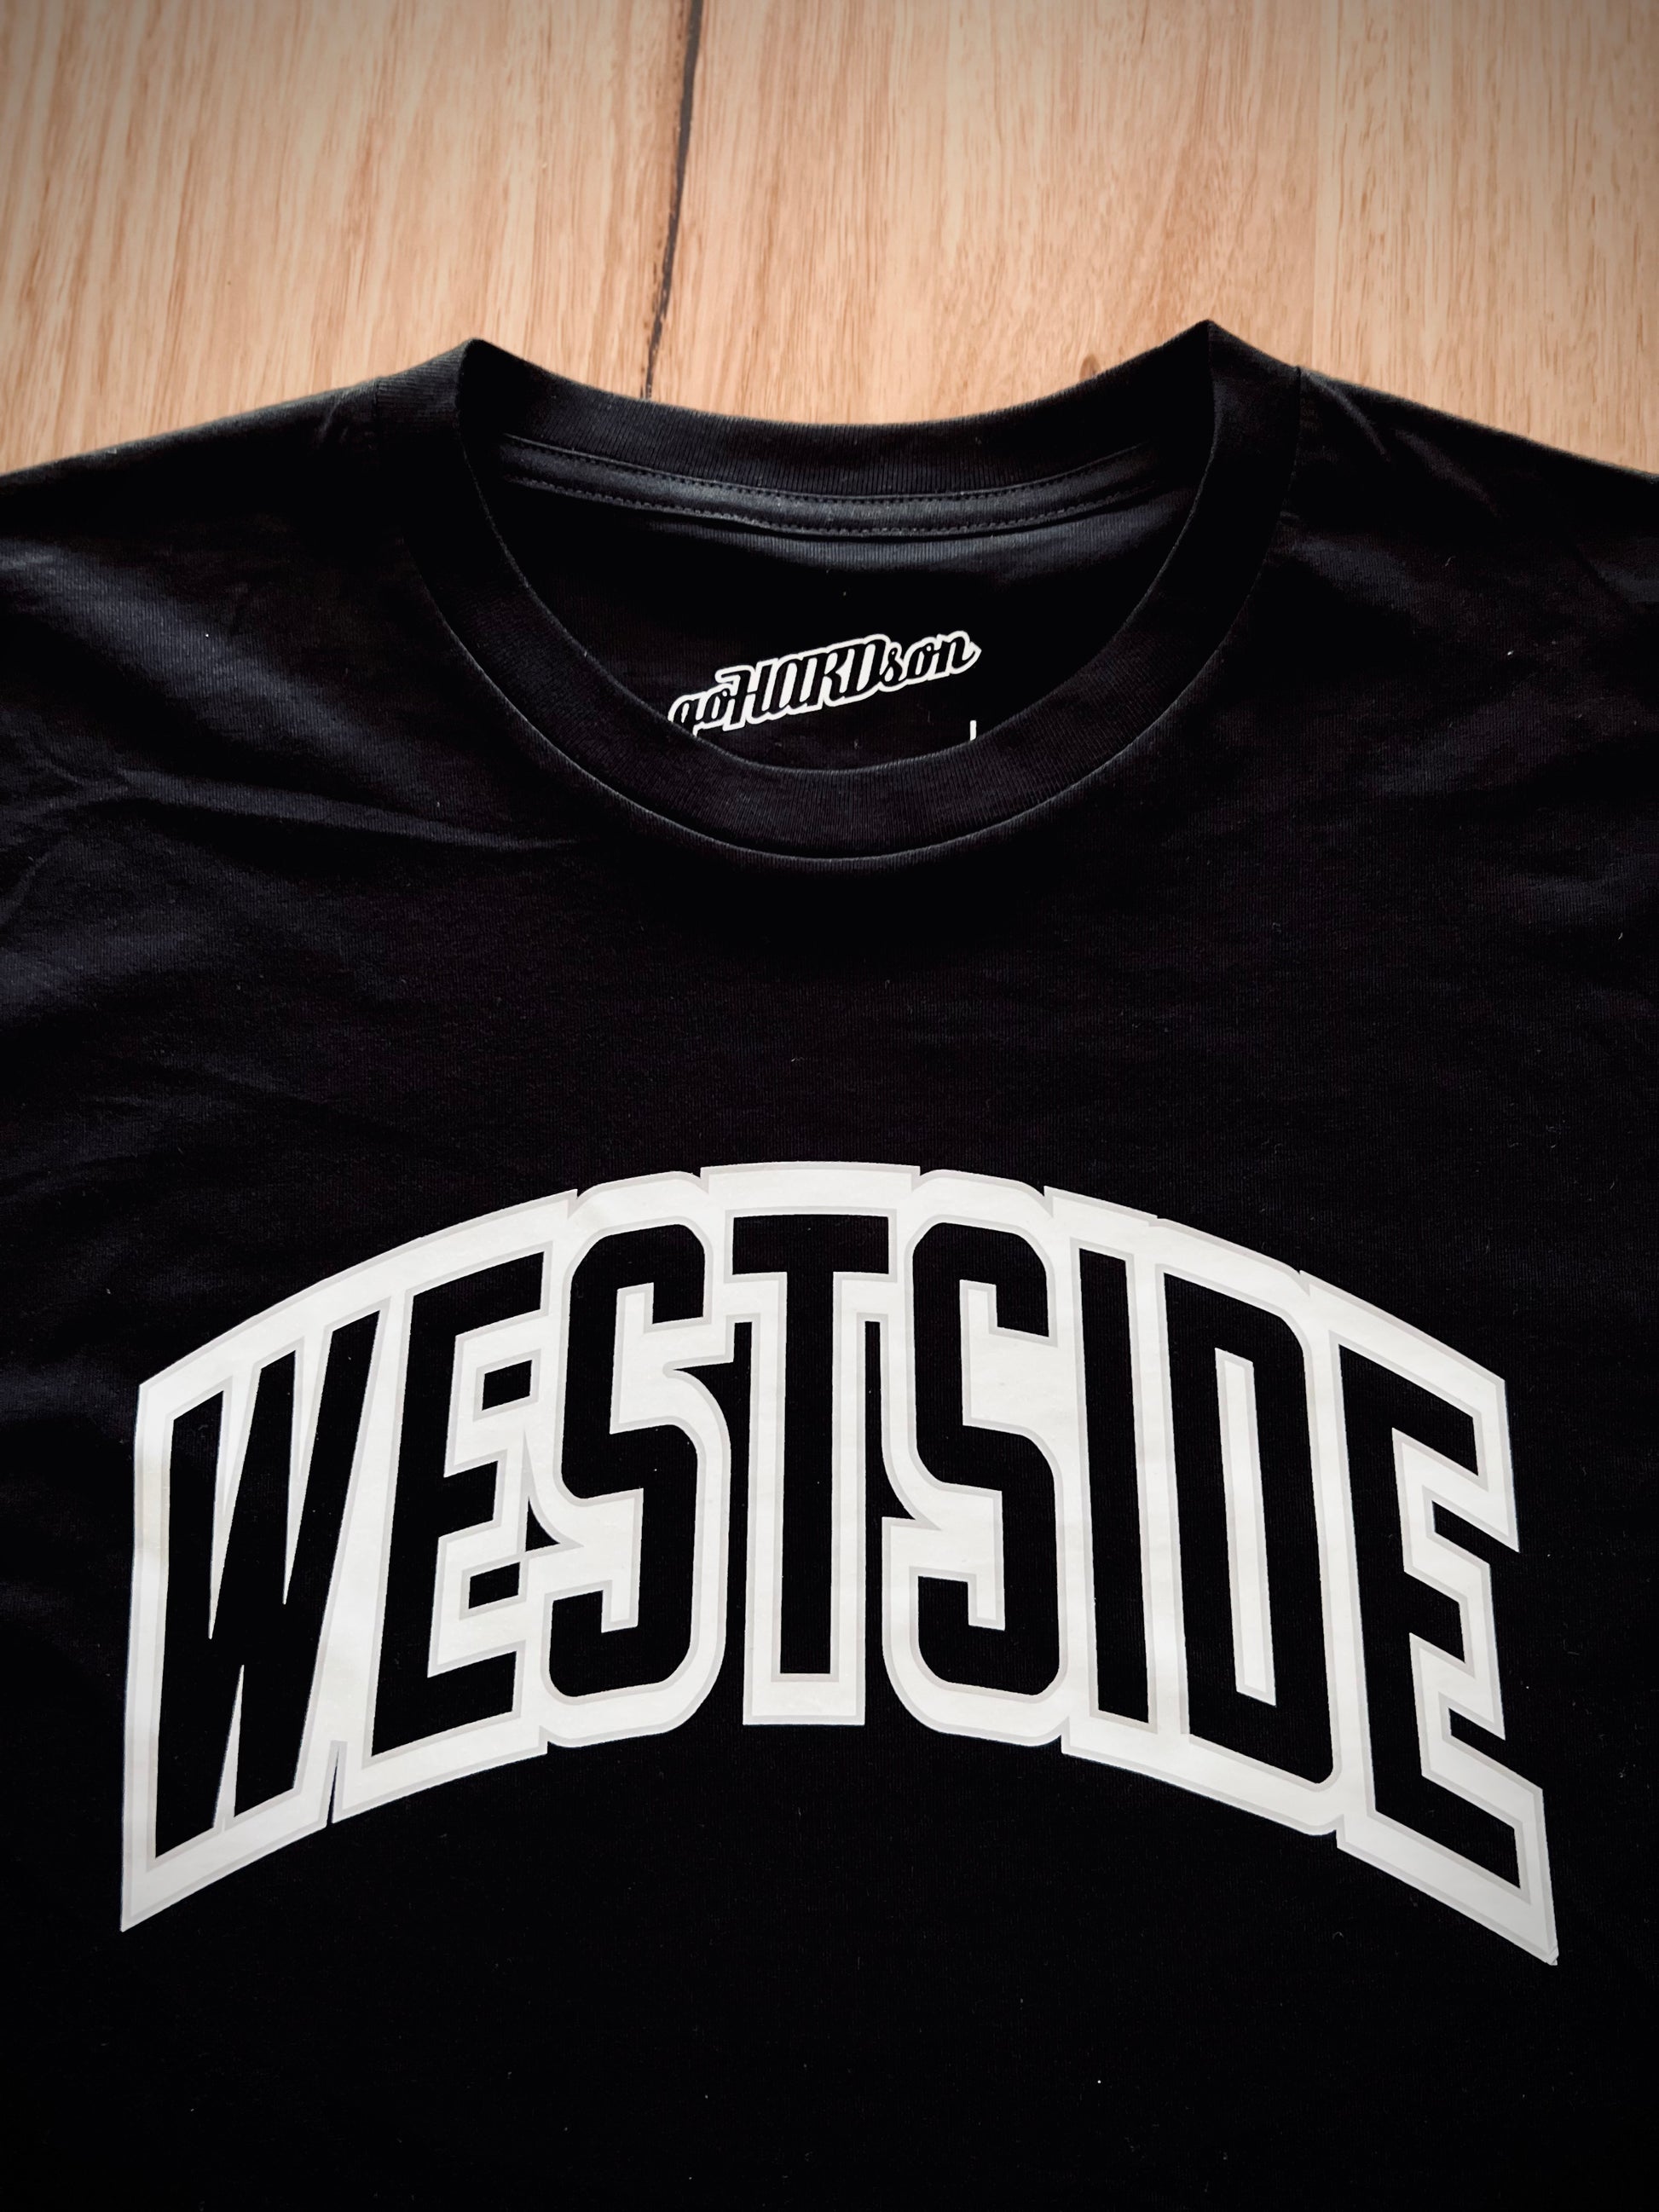 goHARDson "westside' black streetwear tee t-shirt tshirt mens fashion 